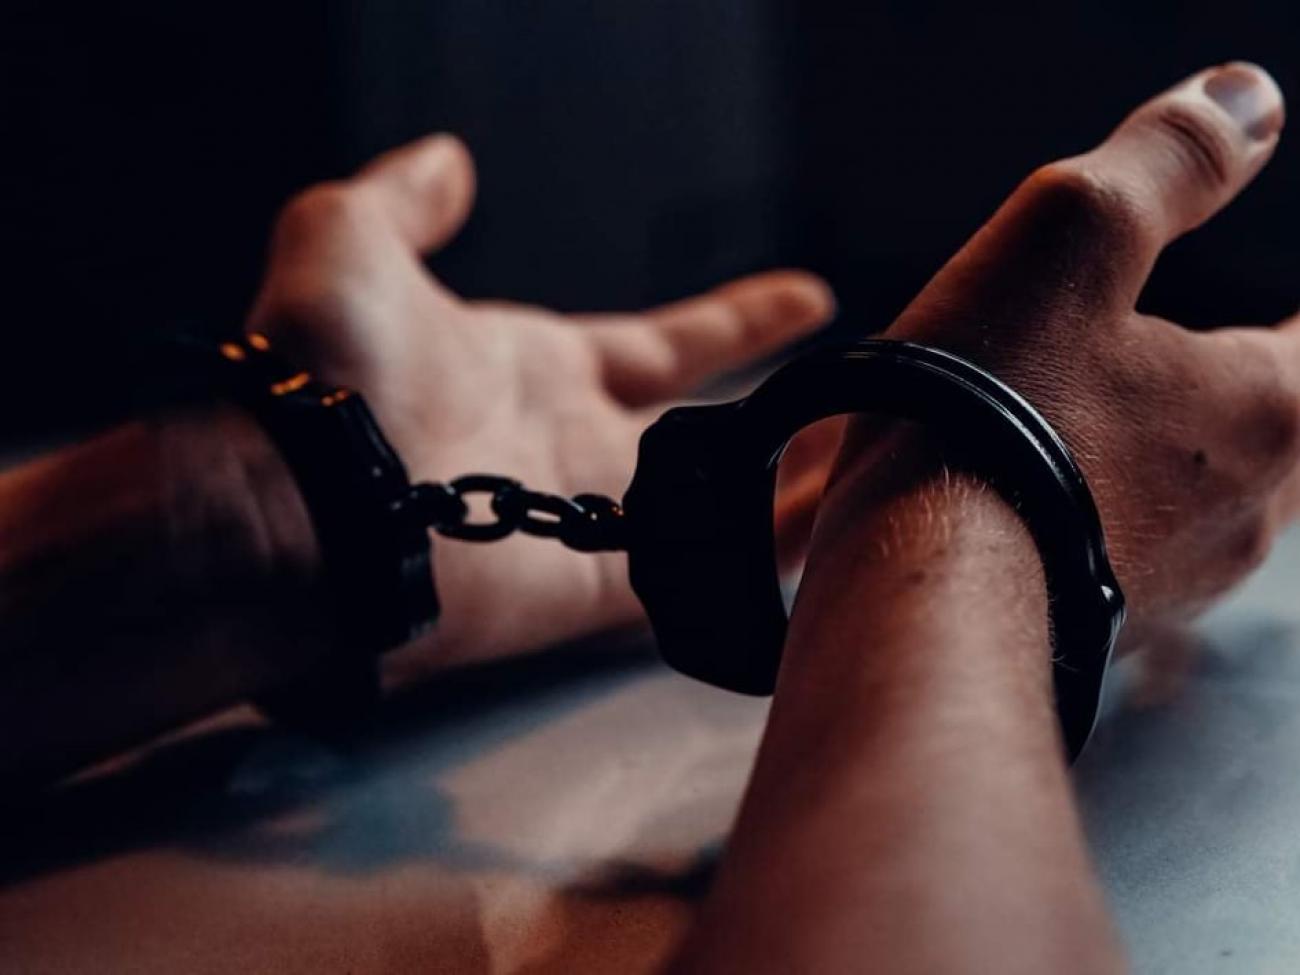 Πειραιάς: Συνελήφθησαν τέσσερις ανήλικοι και ένας ενήλικος που ξυλοκόπησαν 41χρονο για να του πάρουν το κινητό